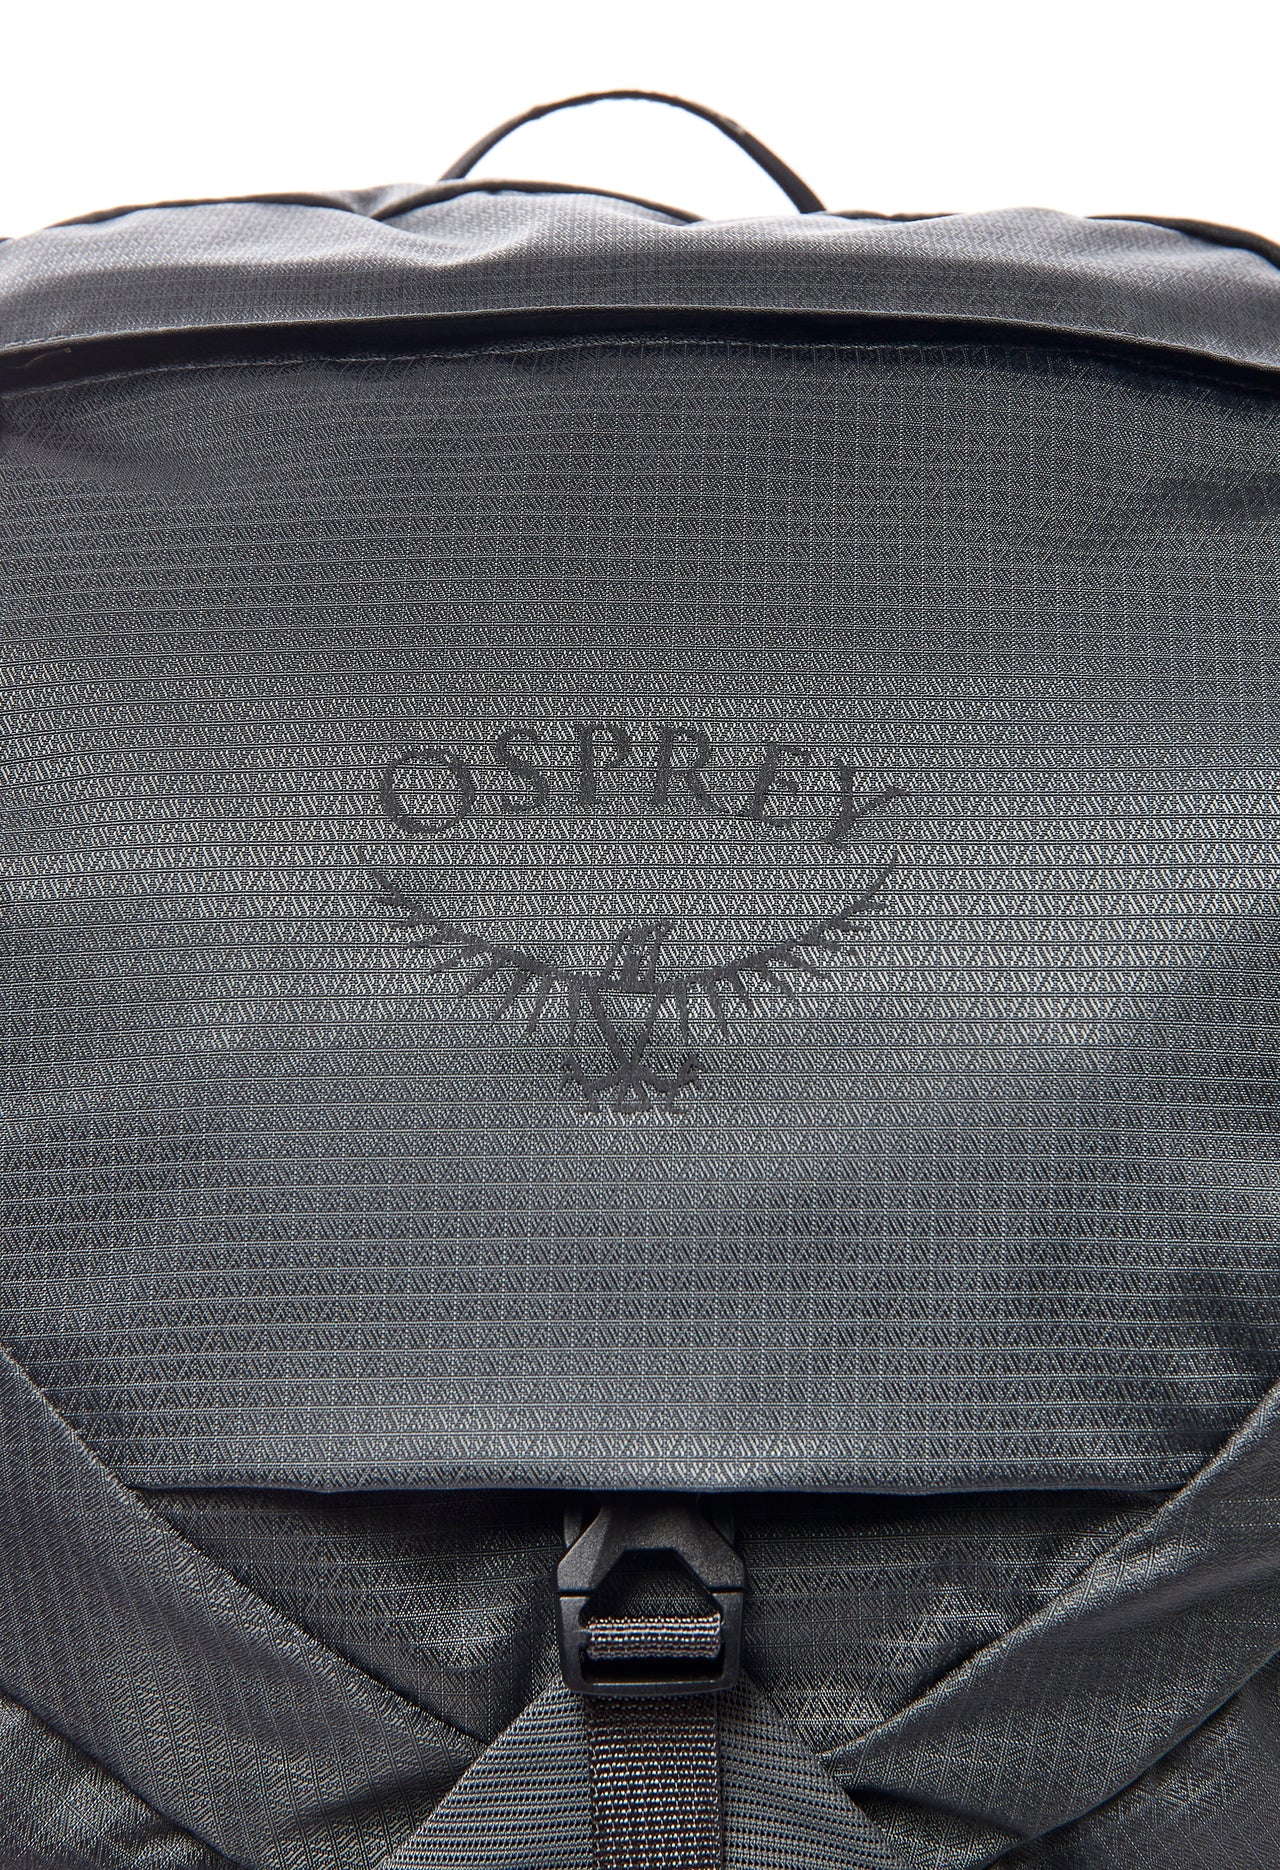 Osprey Talon 26 Backpack - Eclipse Grey